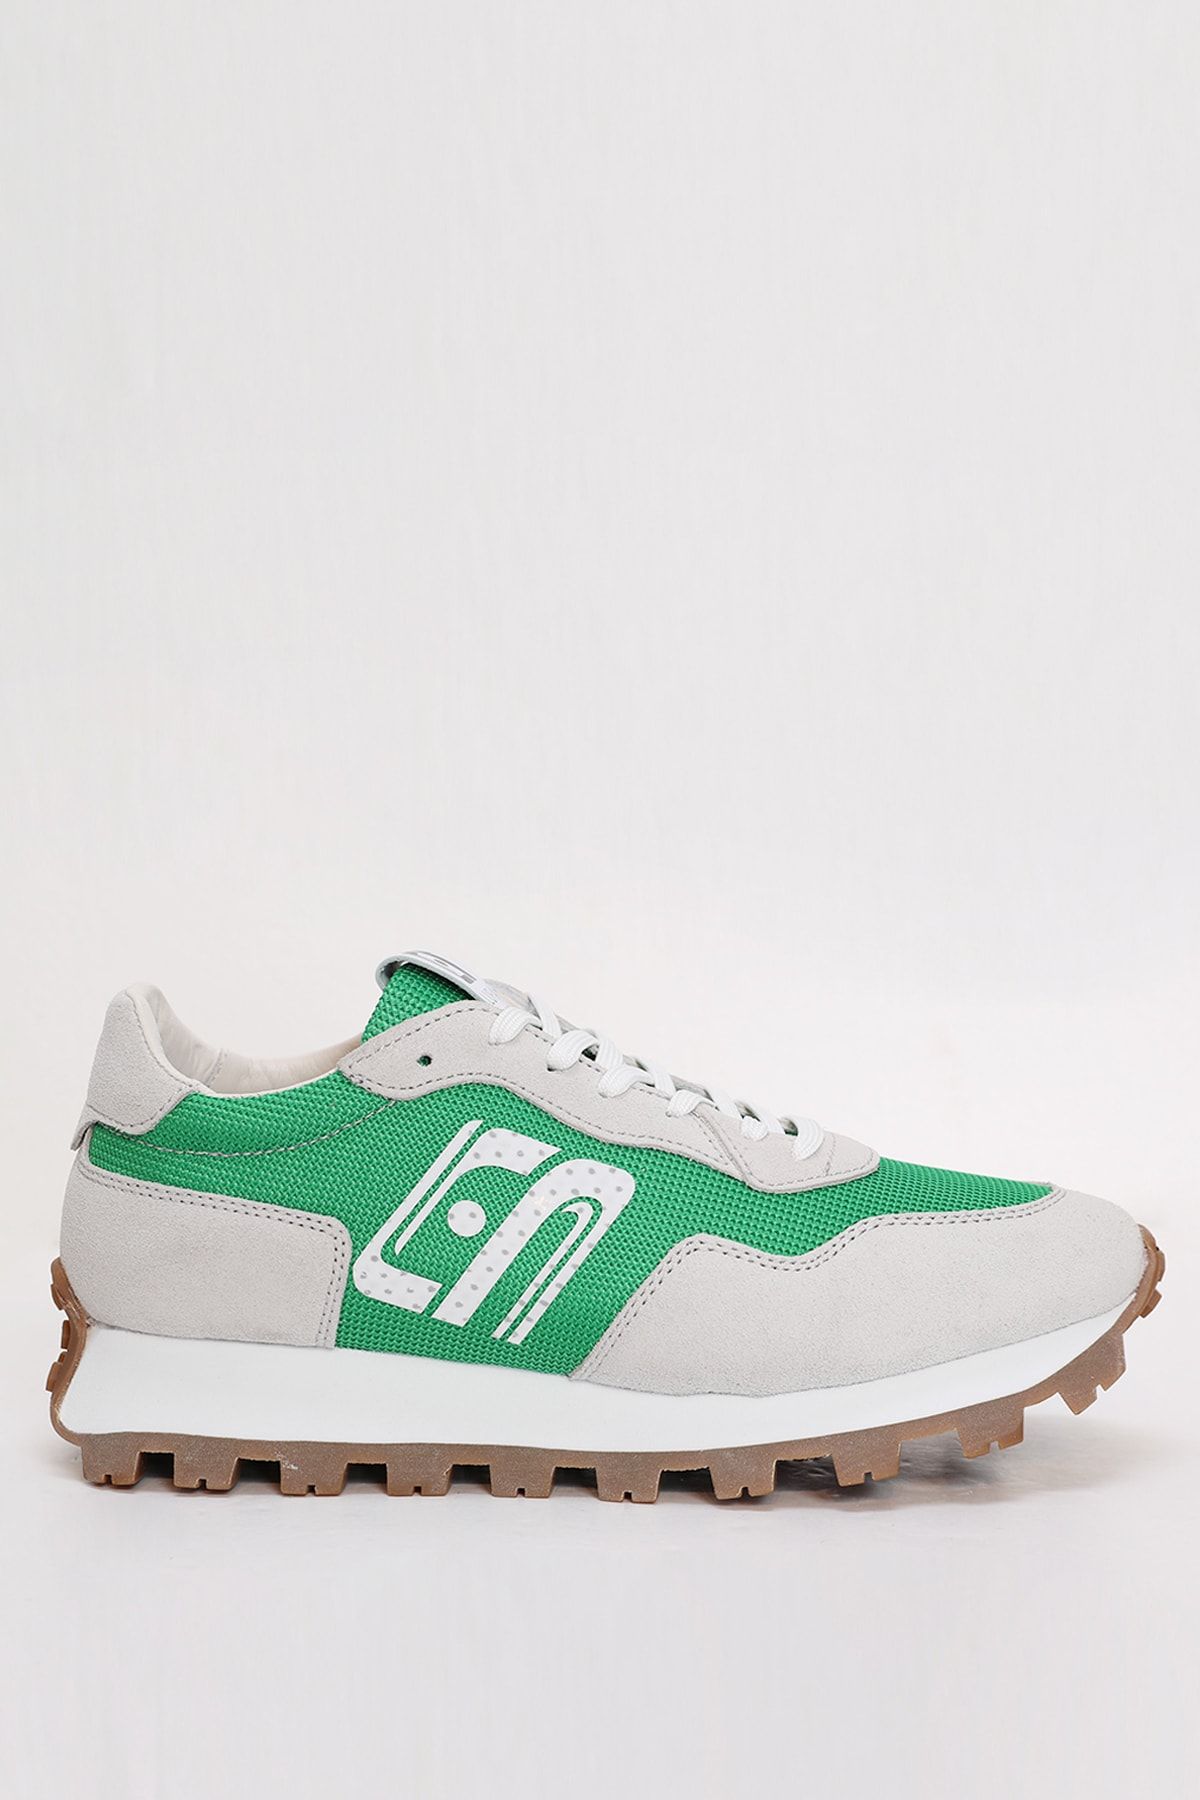 Lufian Arthur Sneaker Yeşil